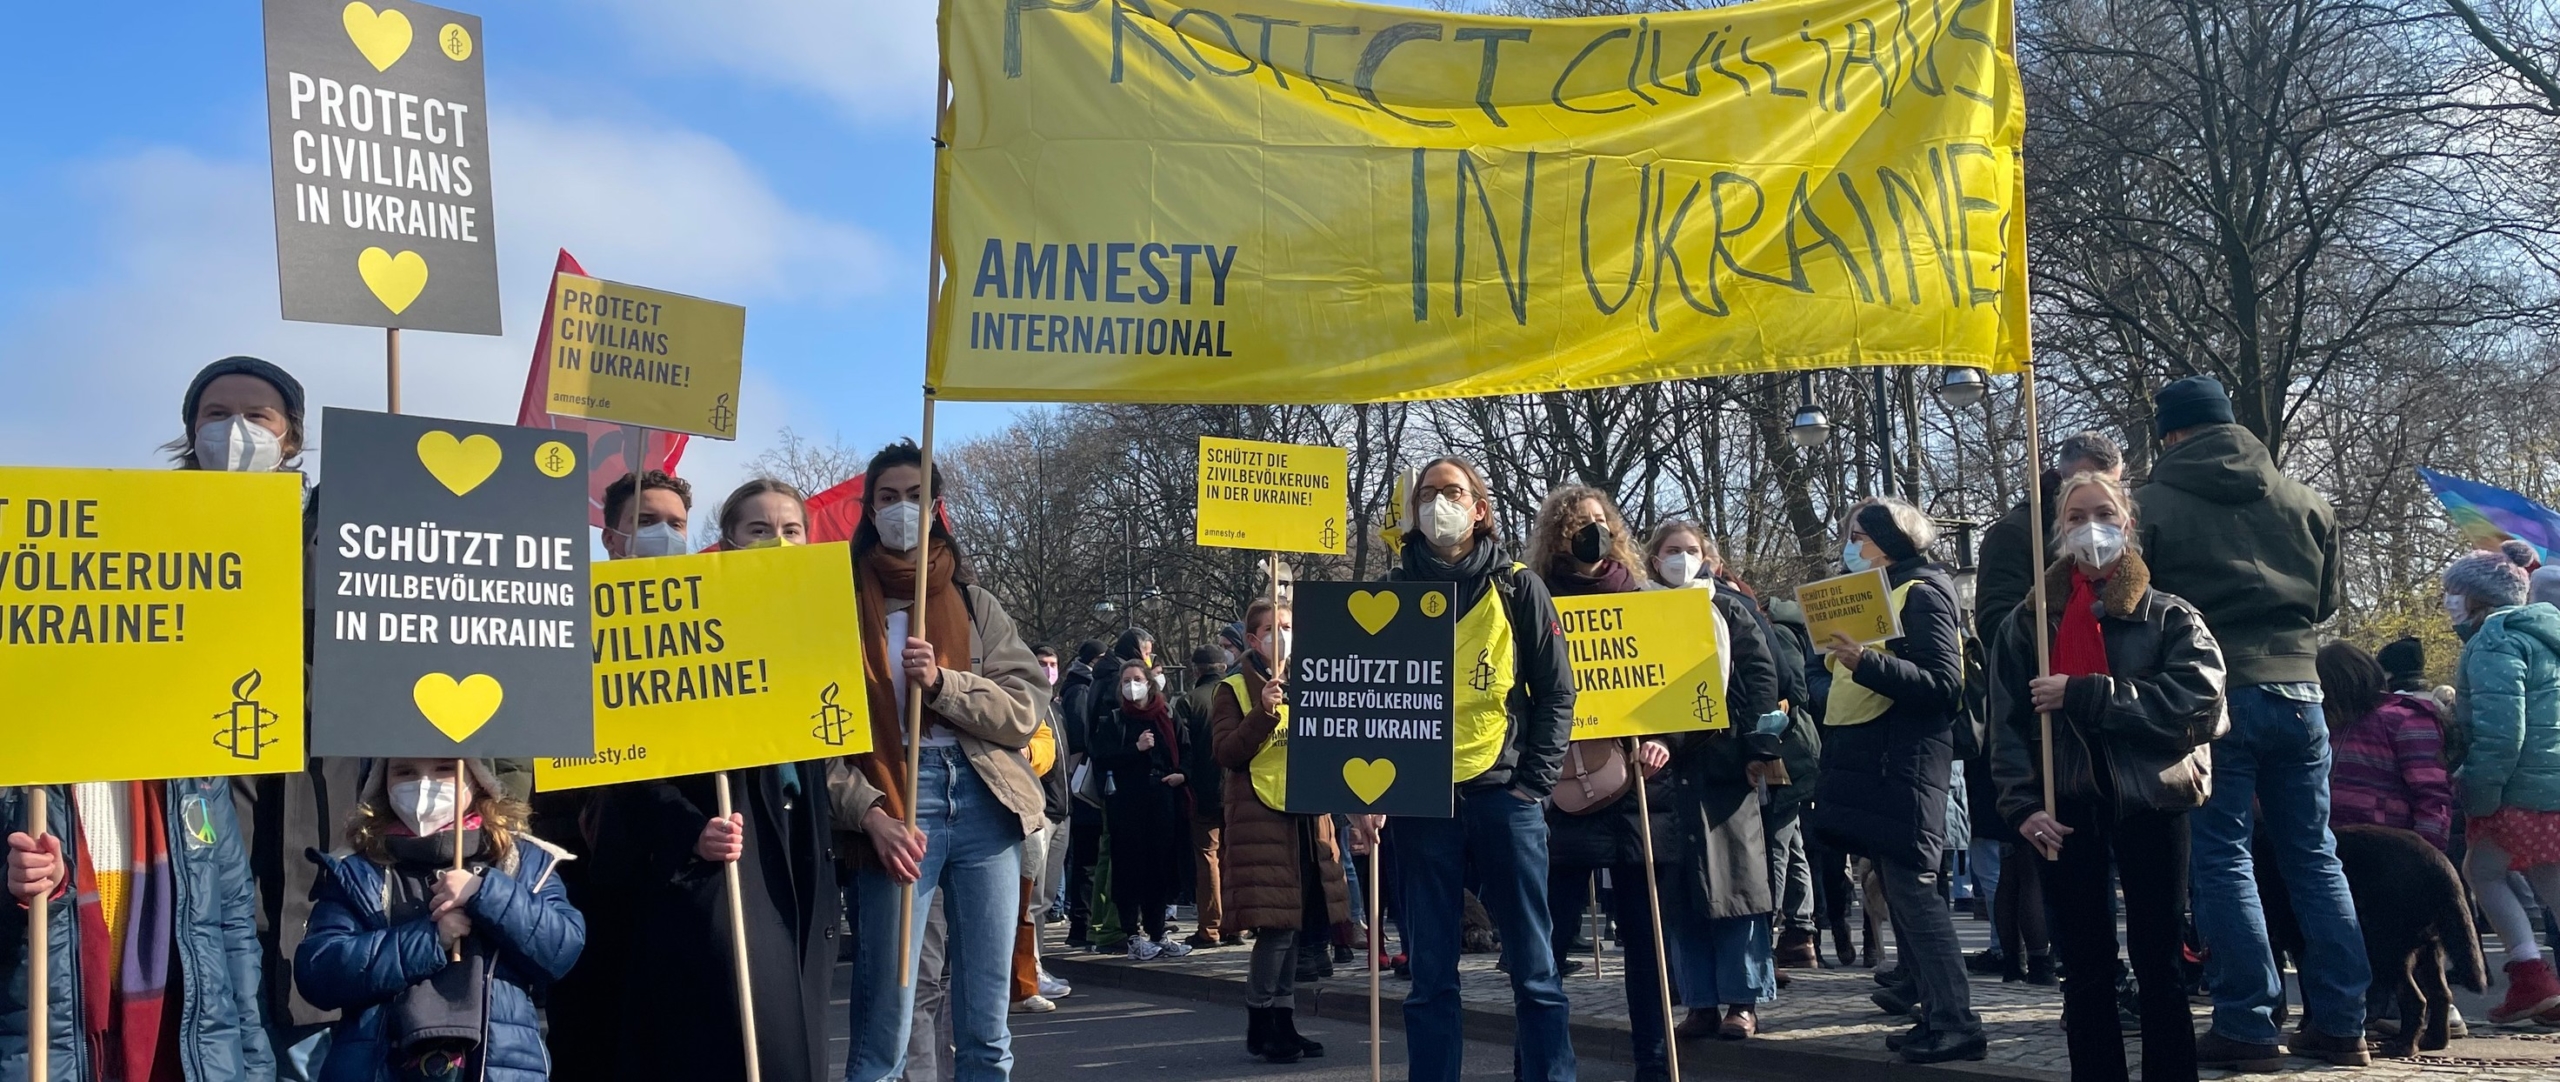 Esperti indipendenti valuteranno il report di Amnesty sui militari ucraini